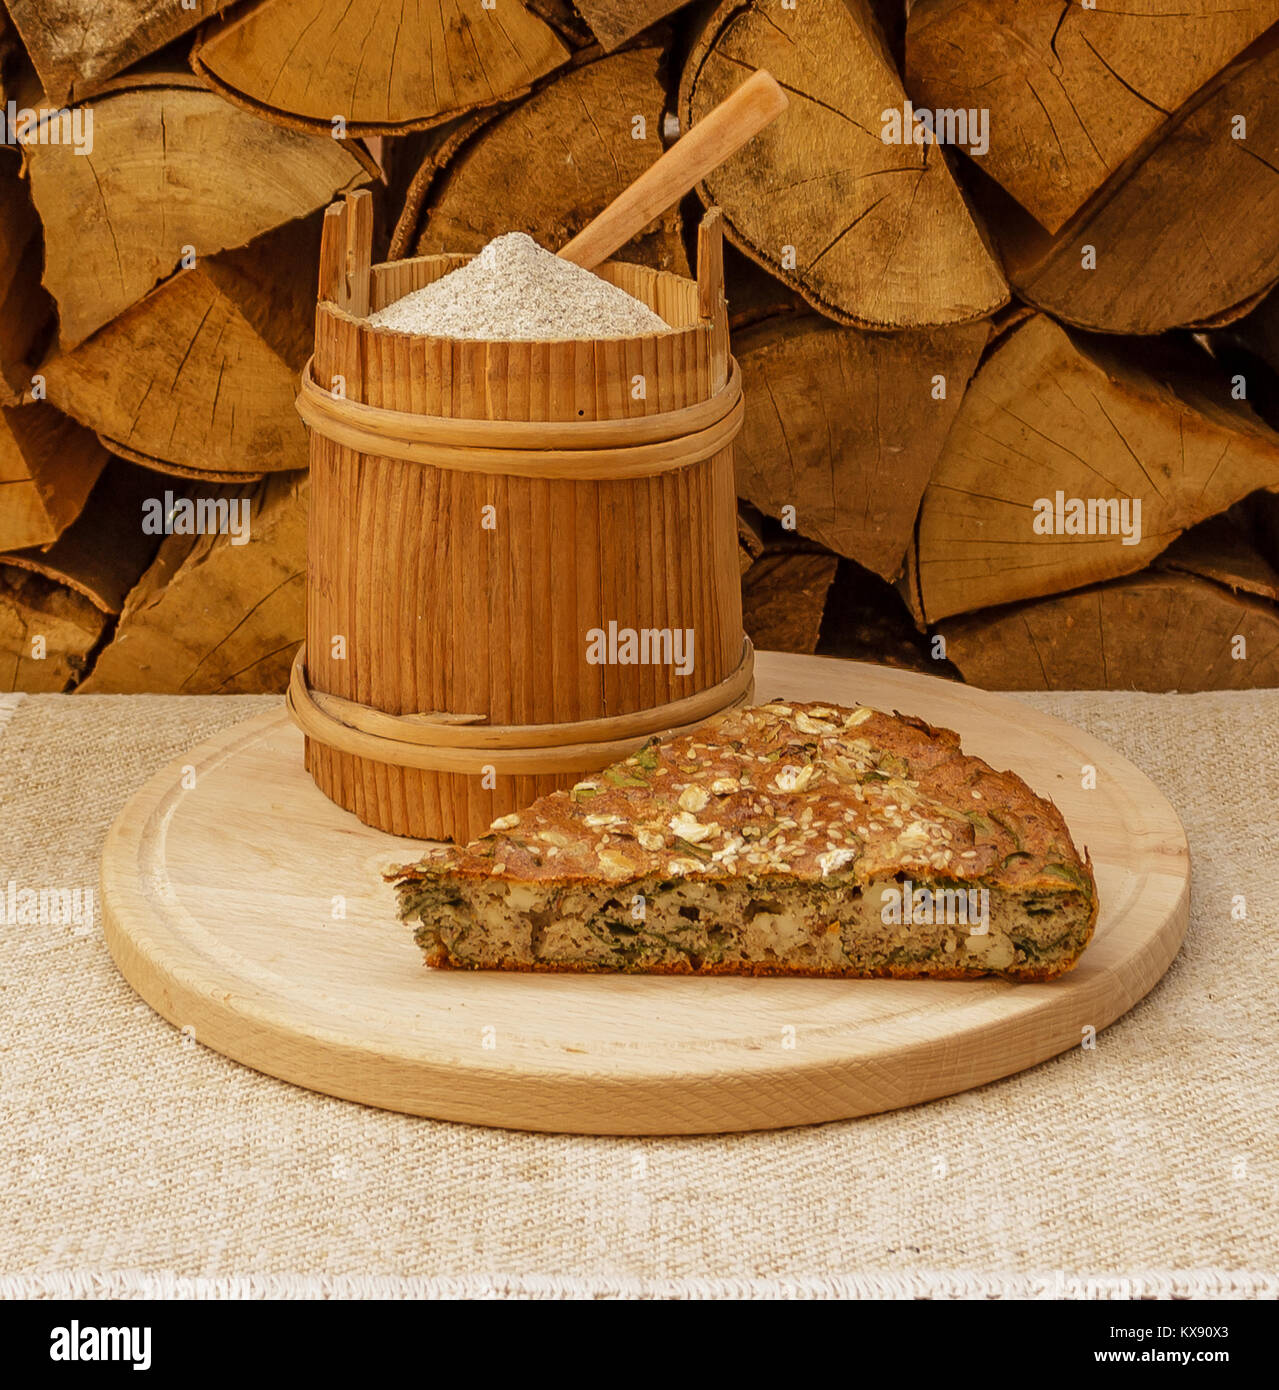 Farine de sarrasin dans un canister et pice de tarte sur plaque de bois Banque D'Images